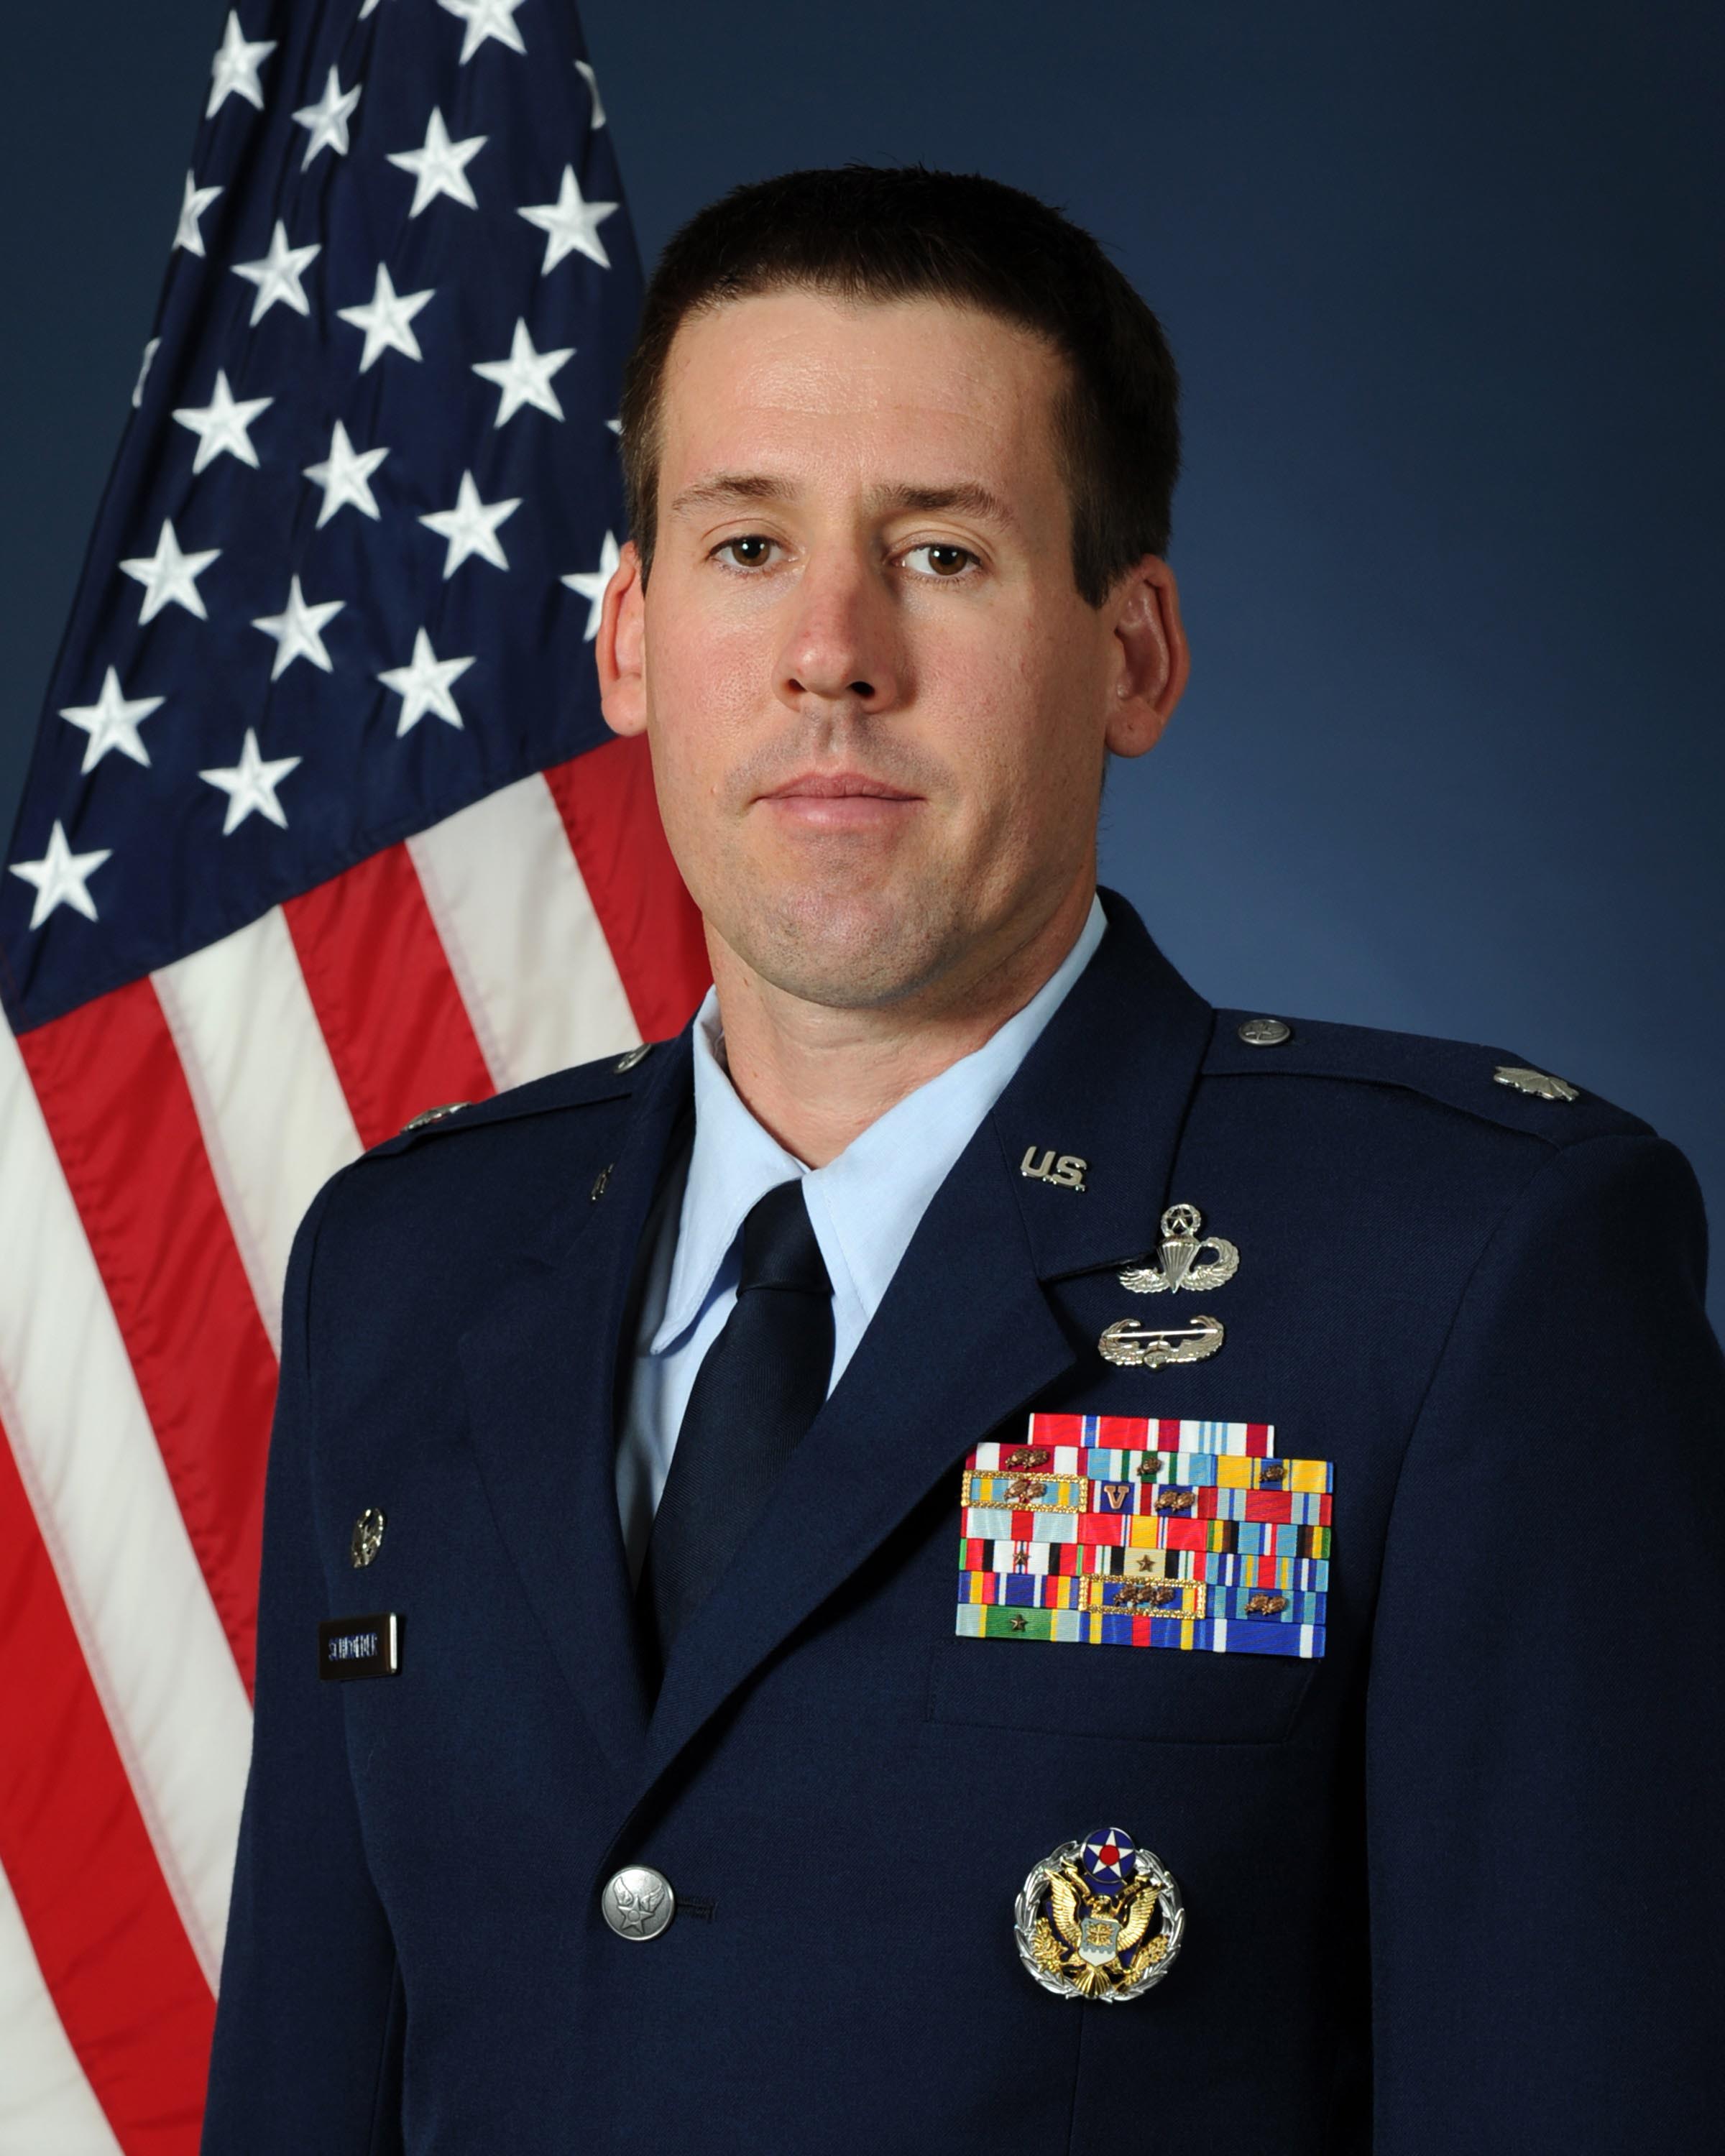 Lt. Col. William A. "Bill" Schroeder